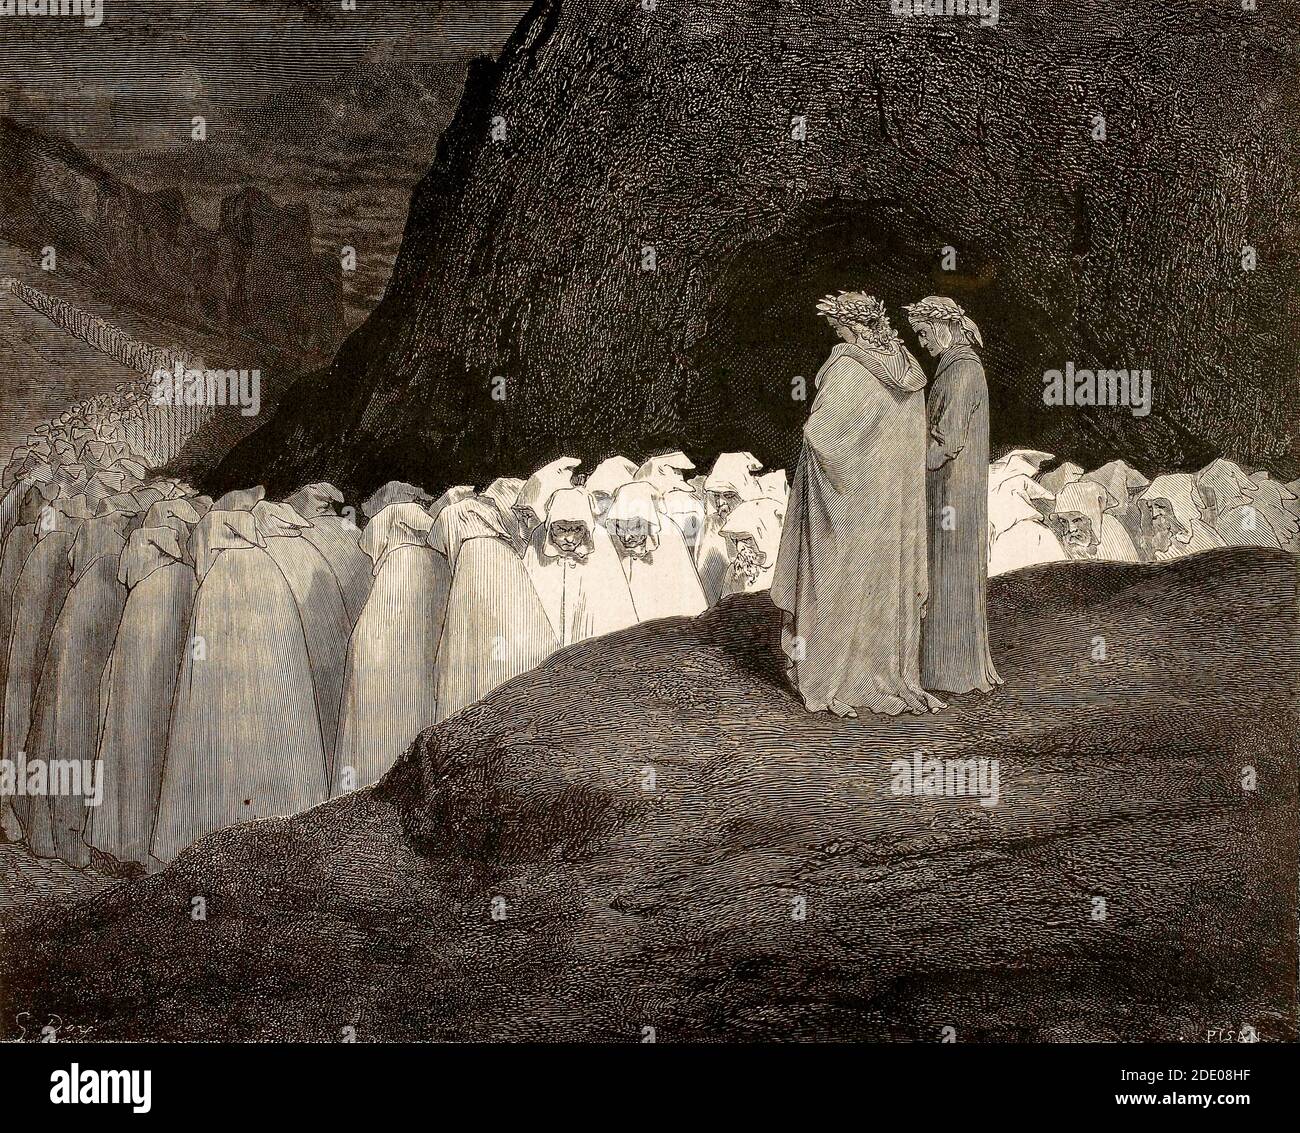 Dante Divina Commedia - Inferno - XXIII canto - dove il Gli ipocriti sono puniti - Dante e Virgilio gli ipocriti - VIII cerchio - illustrazione di Gustave Dorè Foto Stock